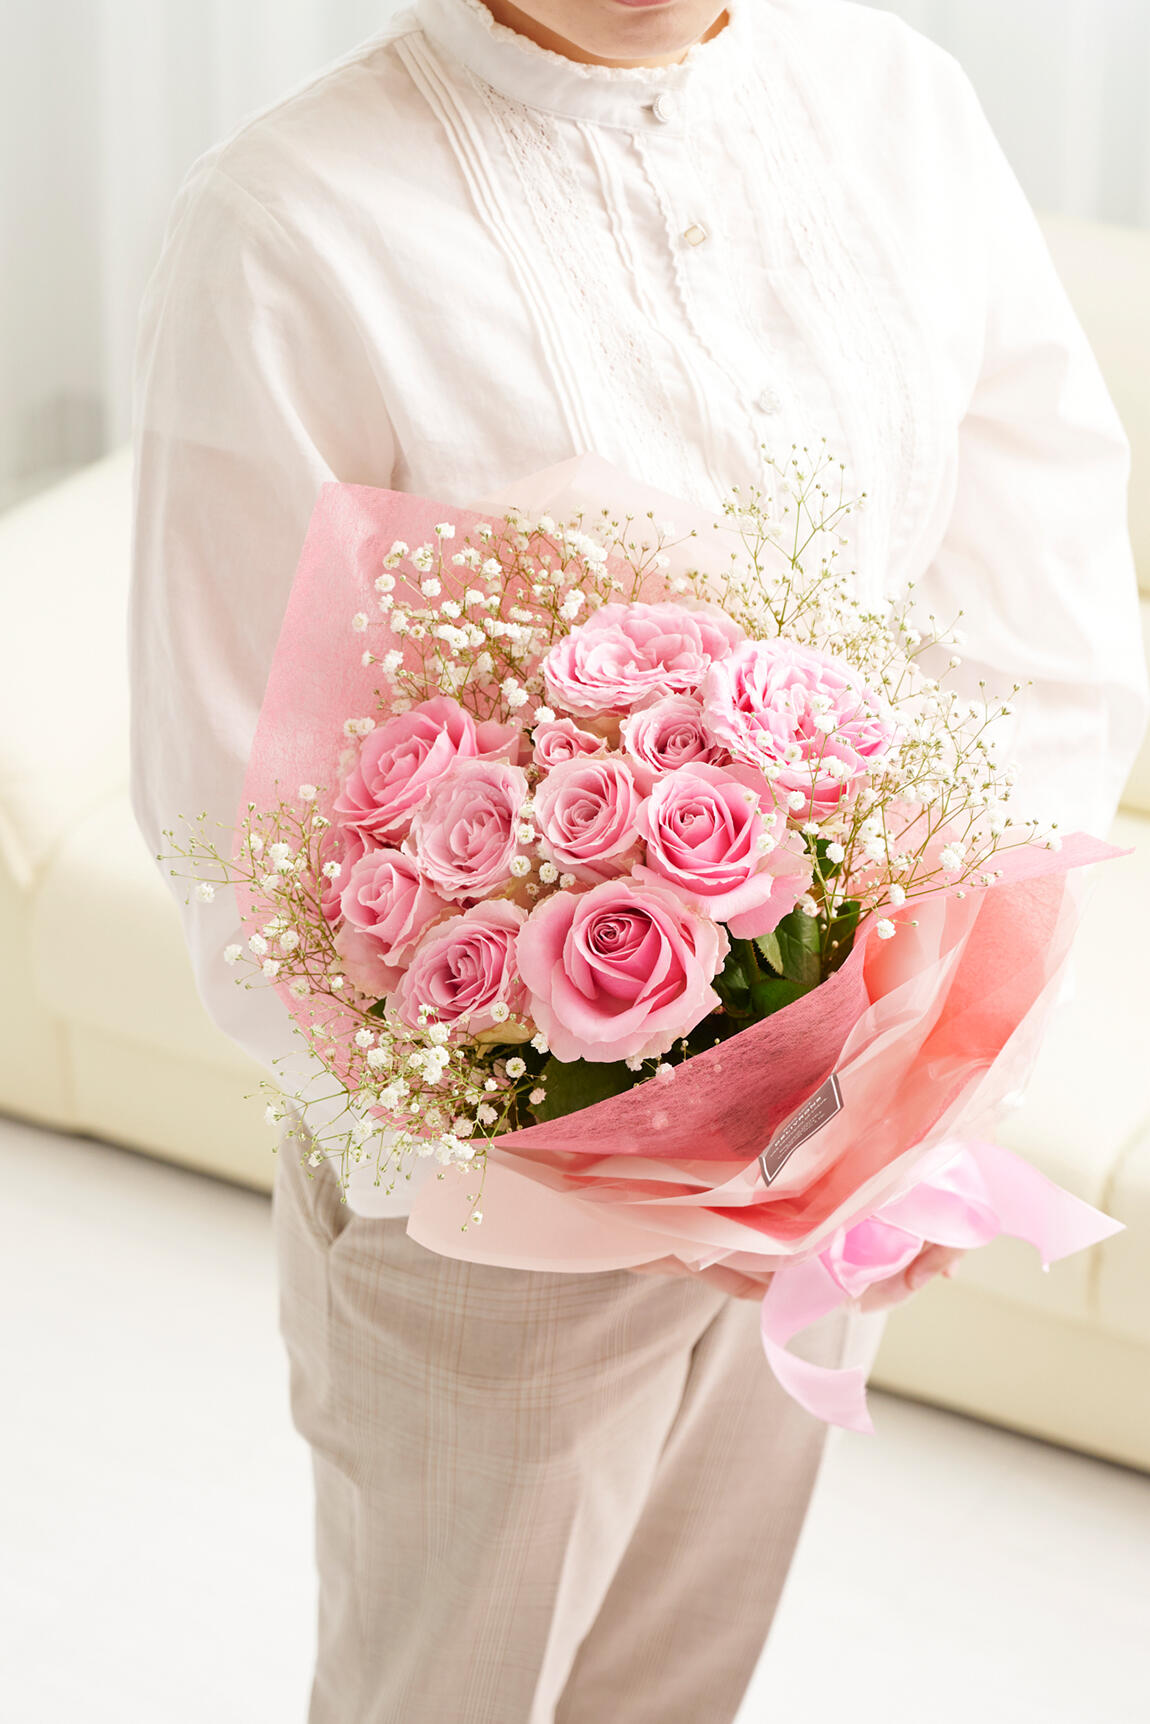 花束 ブーケ ピンクバラ12本 カスミソウ 祝い花と供花の販売 ネットの花屋 ビジネスフラワー